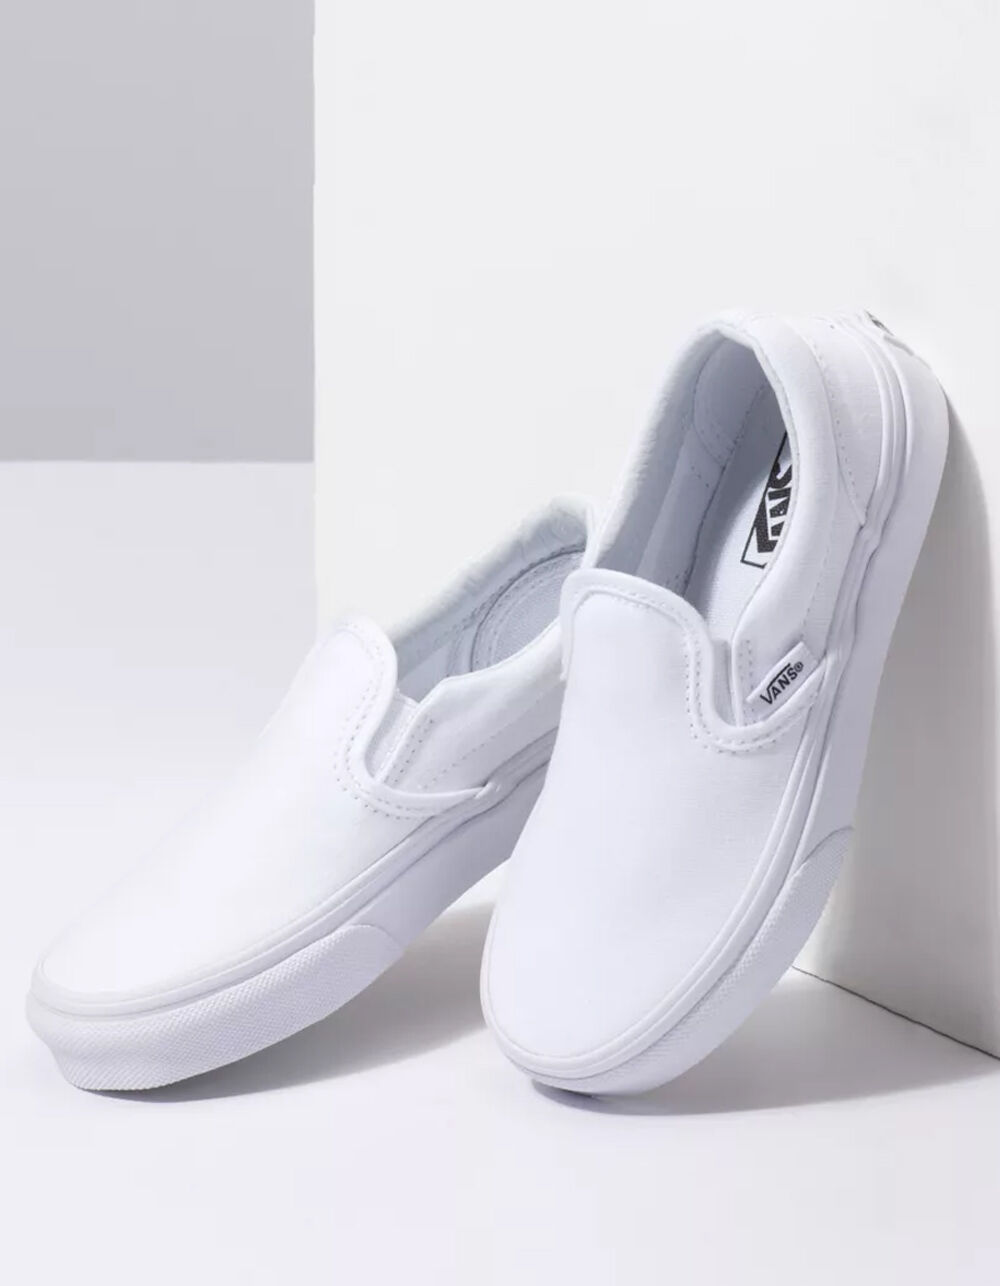 VANS Classic Slip-On Kids Shoes - WHITE | Tillys